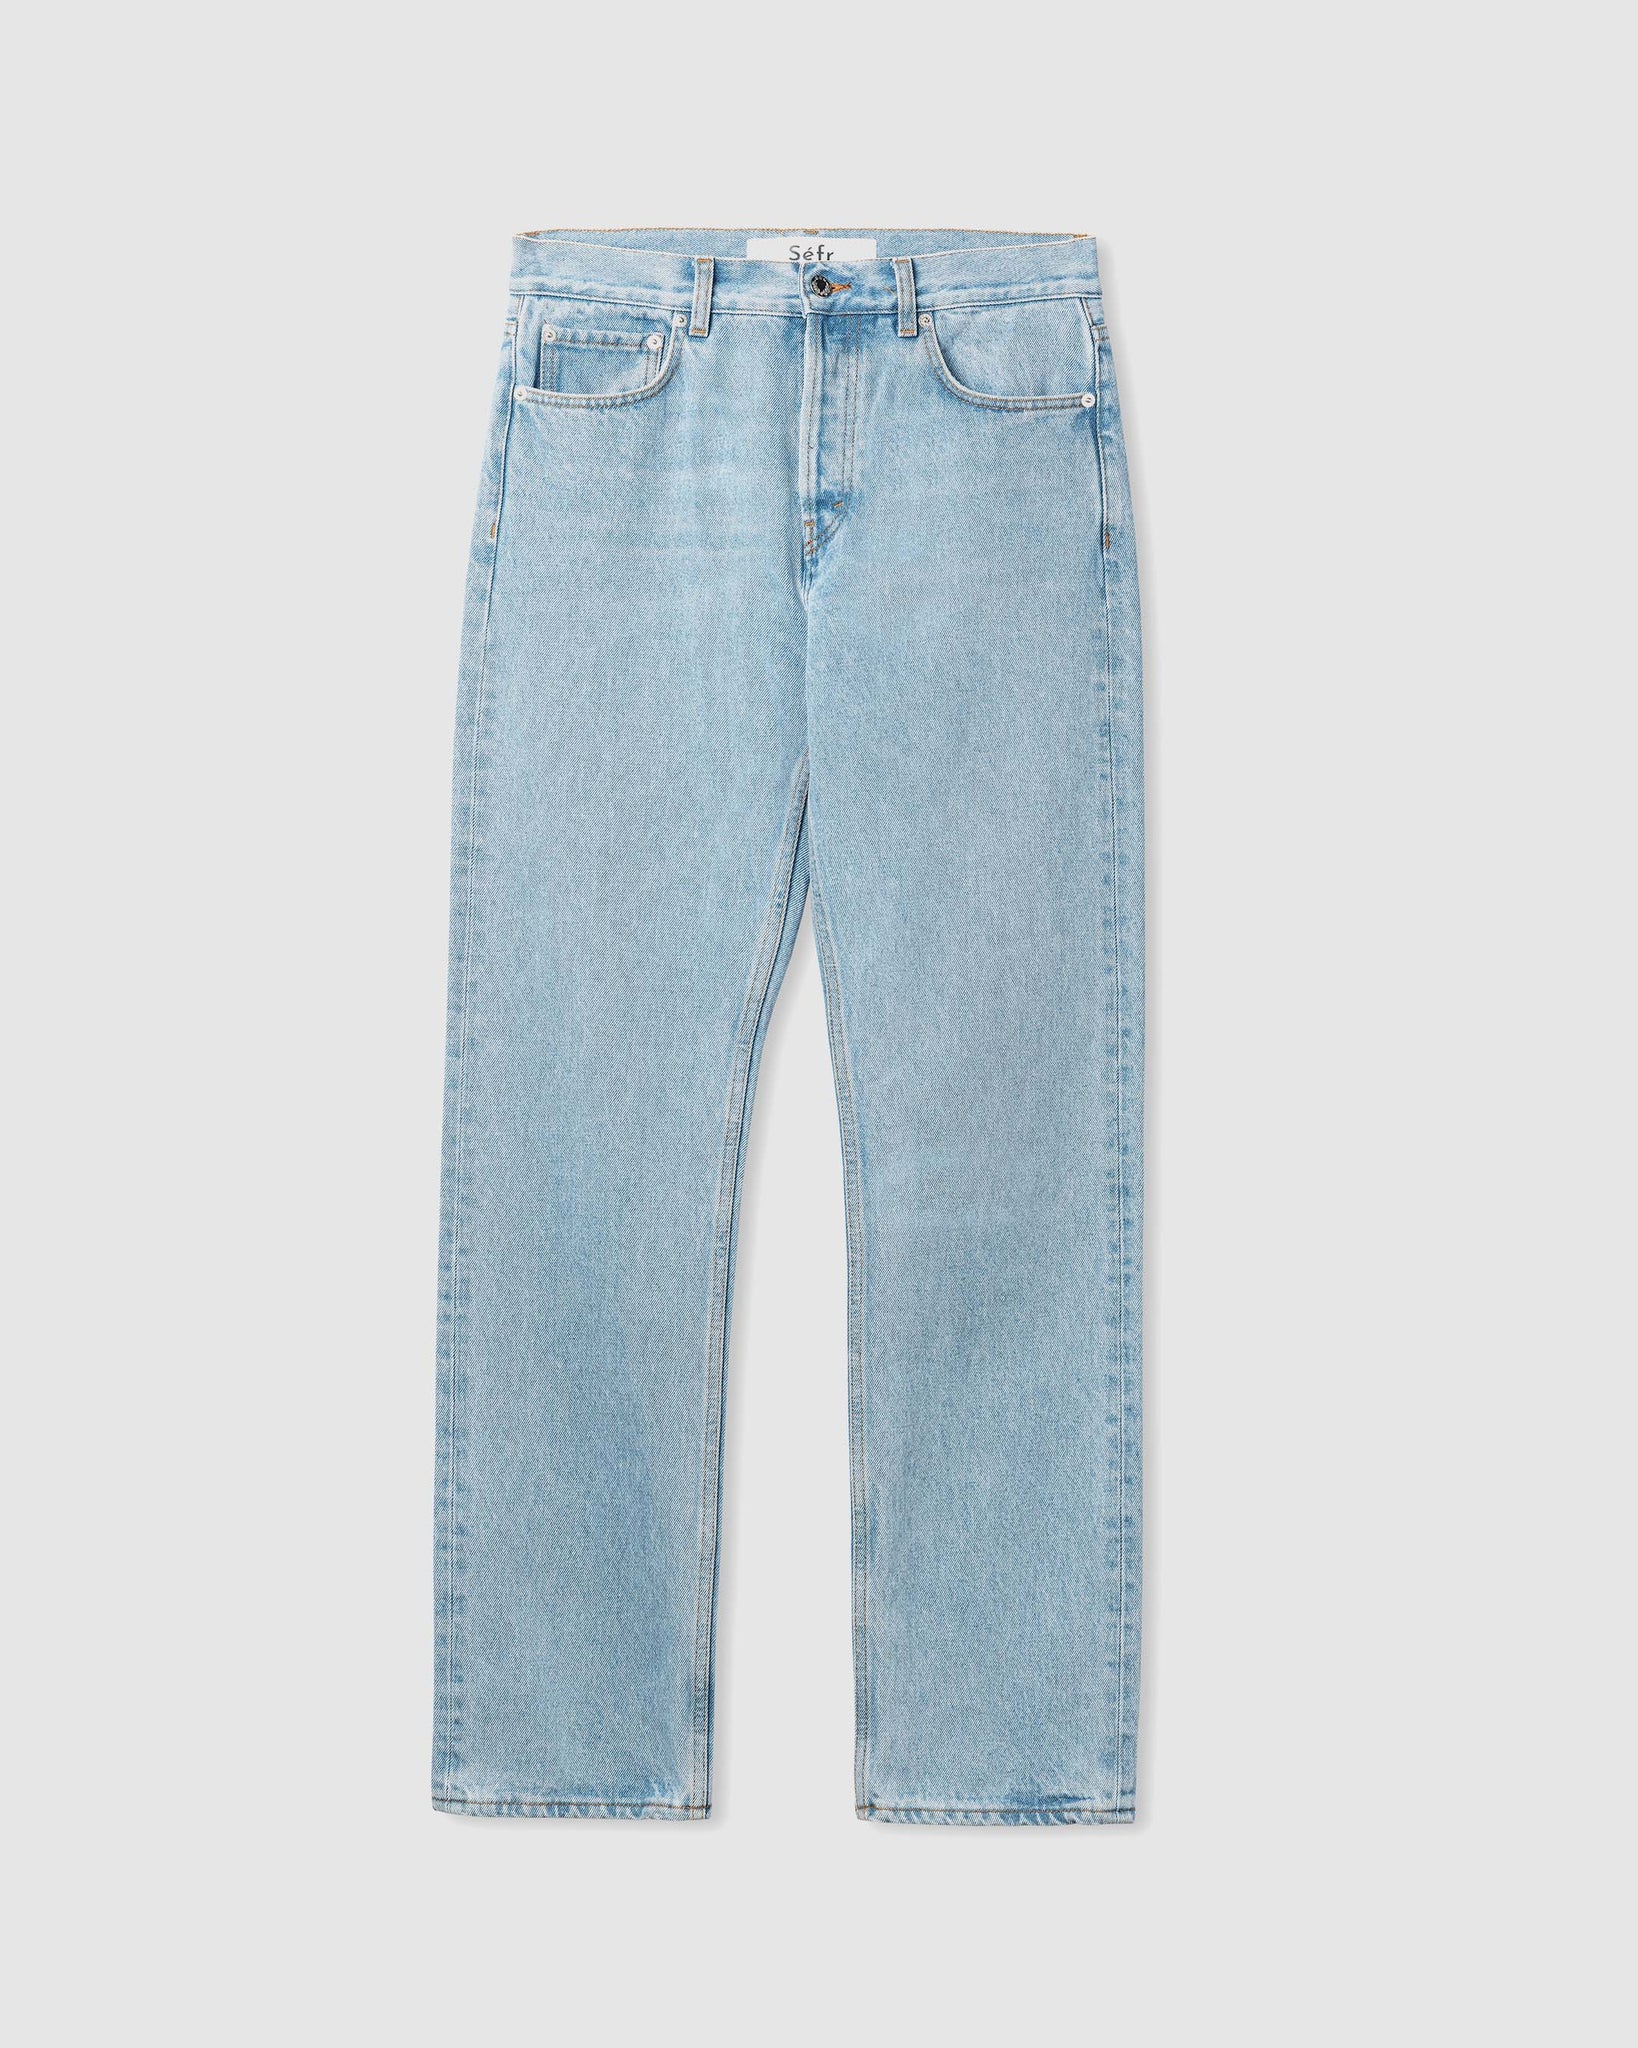 Straight Cut Jeans - Subtle Wash